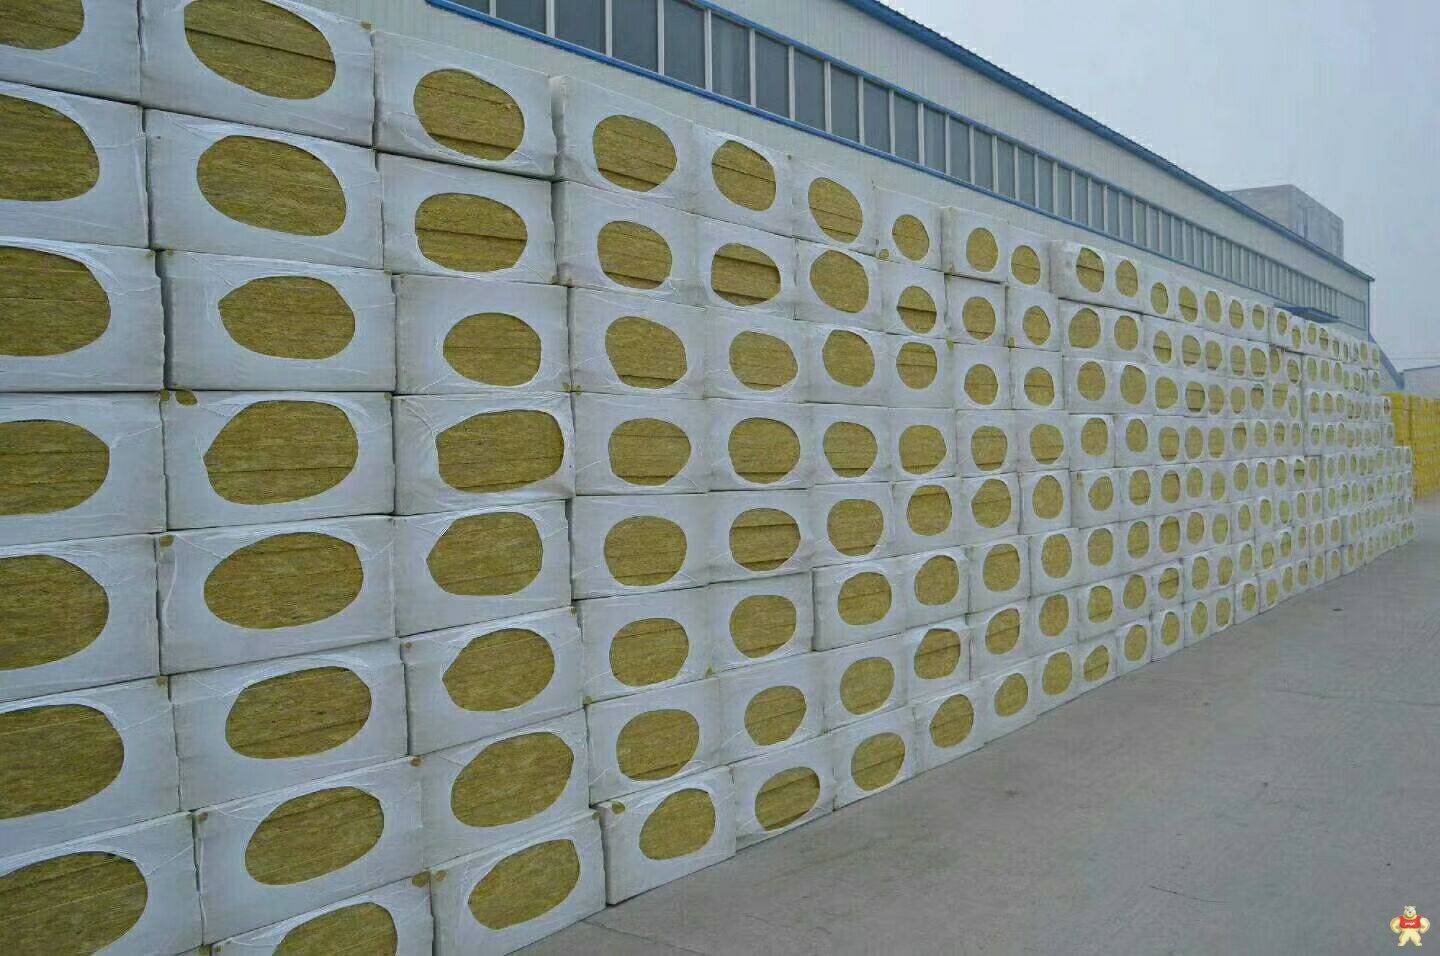 生产外墙防水岩棉板厂家 外墙防水岩棉板厂家直销 岩棉复合板,岩棉保温板,岩棉,聚氨酯岩棉复合板,复合岩棉板